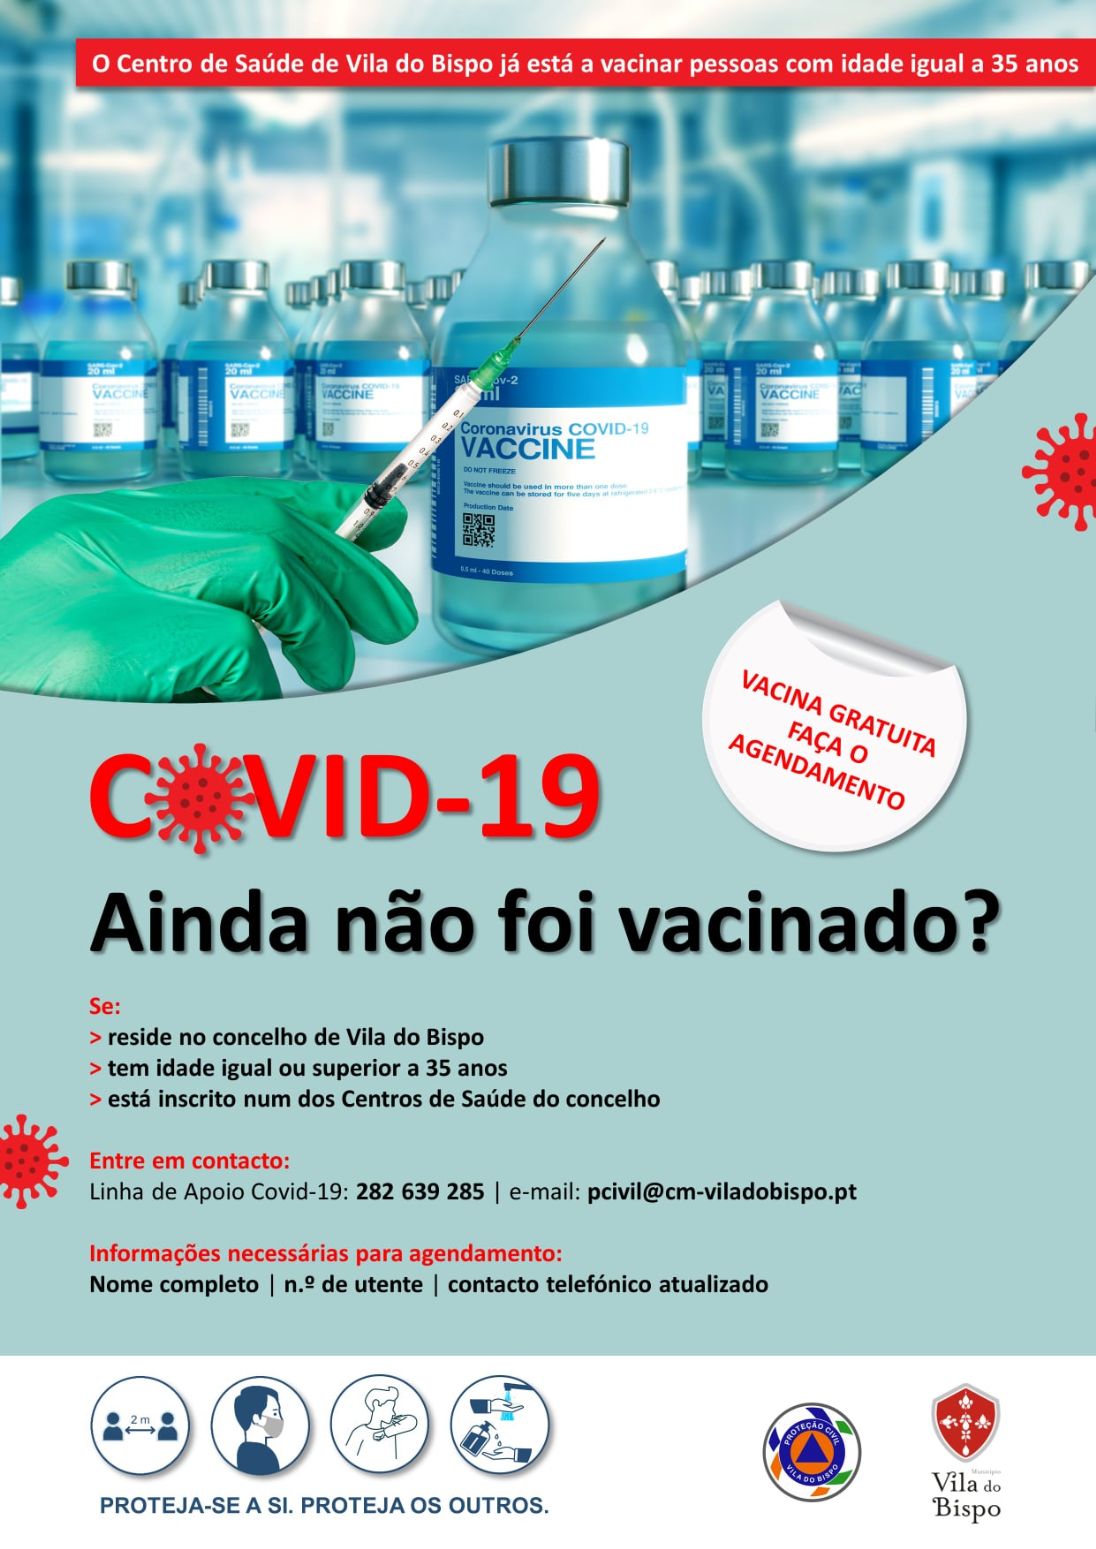 Centro de Saúde de Vila do Bispo já está a vacinar pessoas com 35 anos